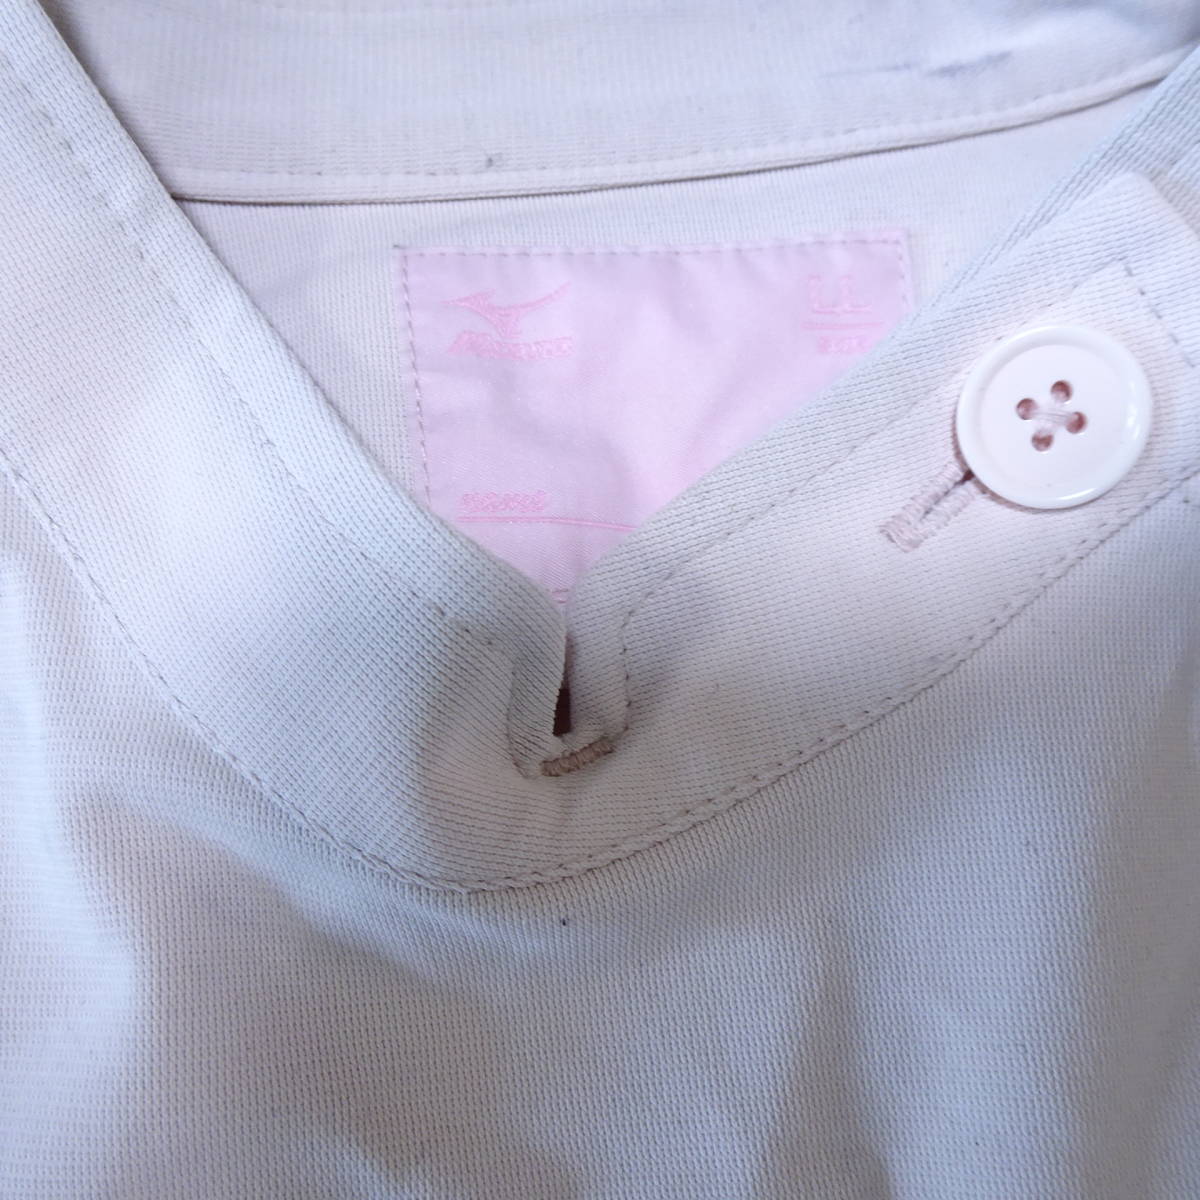 11-93☆コスプレ衣装☆ピンク系・ナース服とエプロンいっぱいセット・サイズLLの画像3